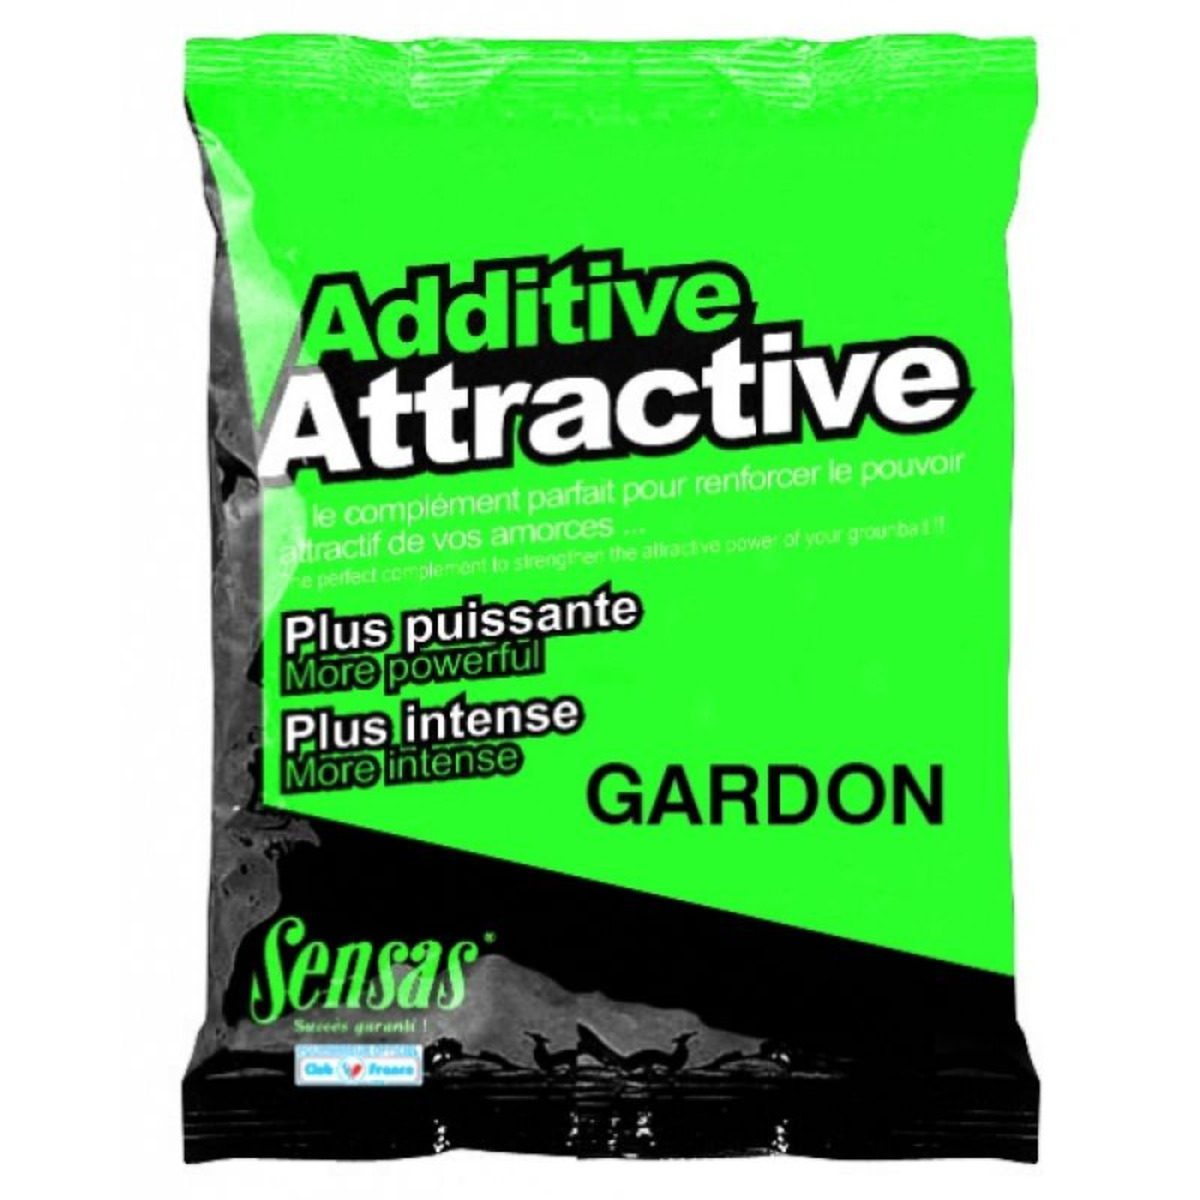 Sensas Additivo Attractive - Gardon - 250 g